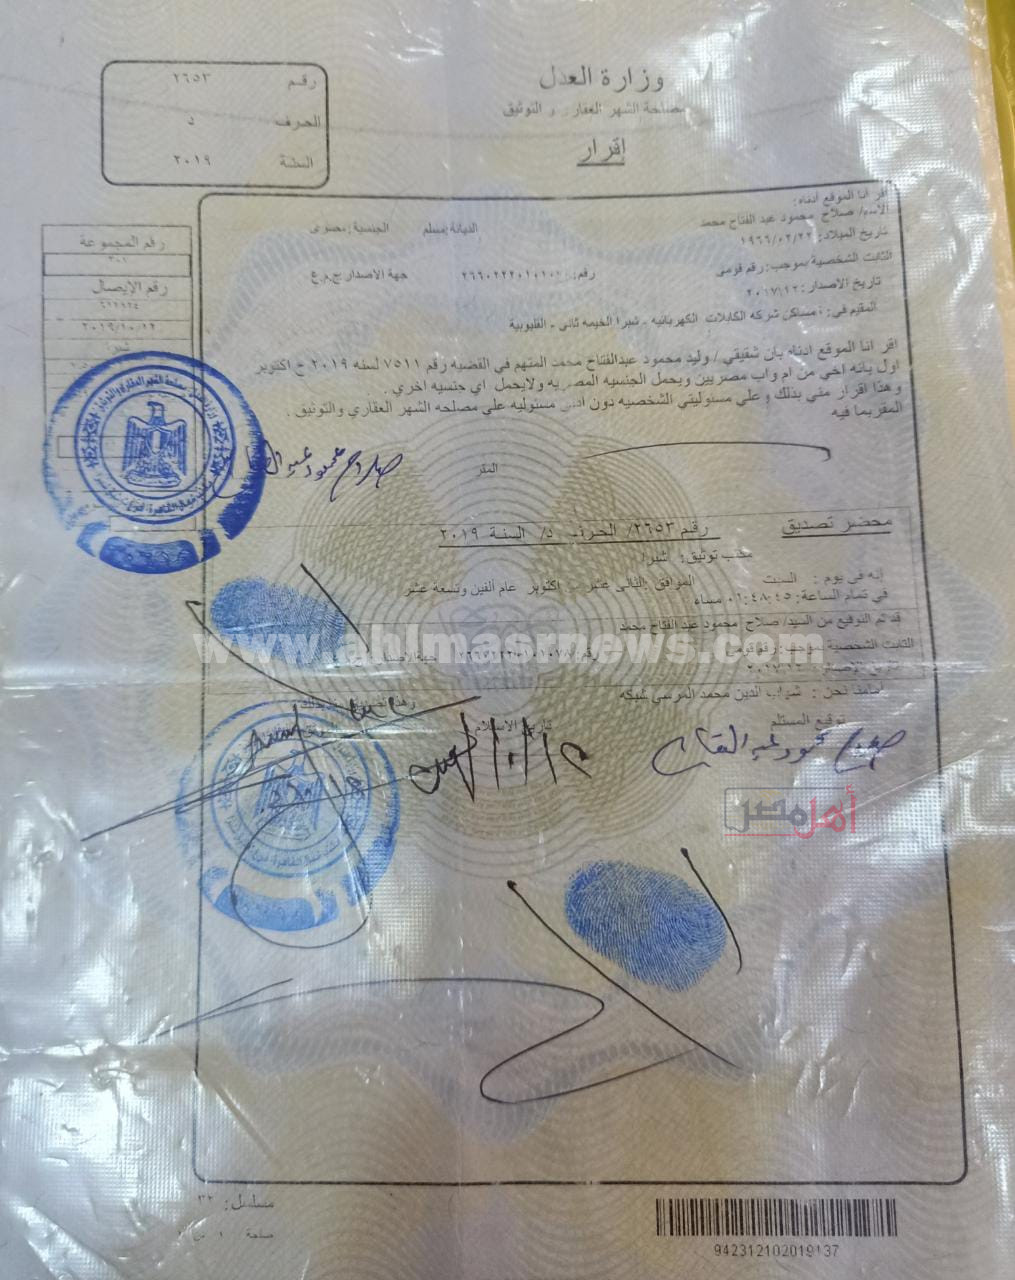 إقرار يثبت أن المتهم الأول مصري الجنسية وليس عراقيا